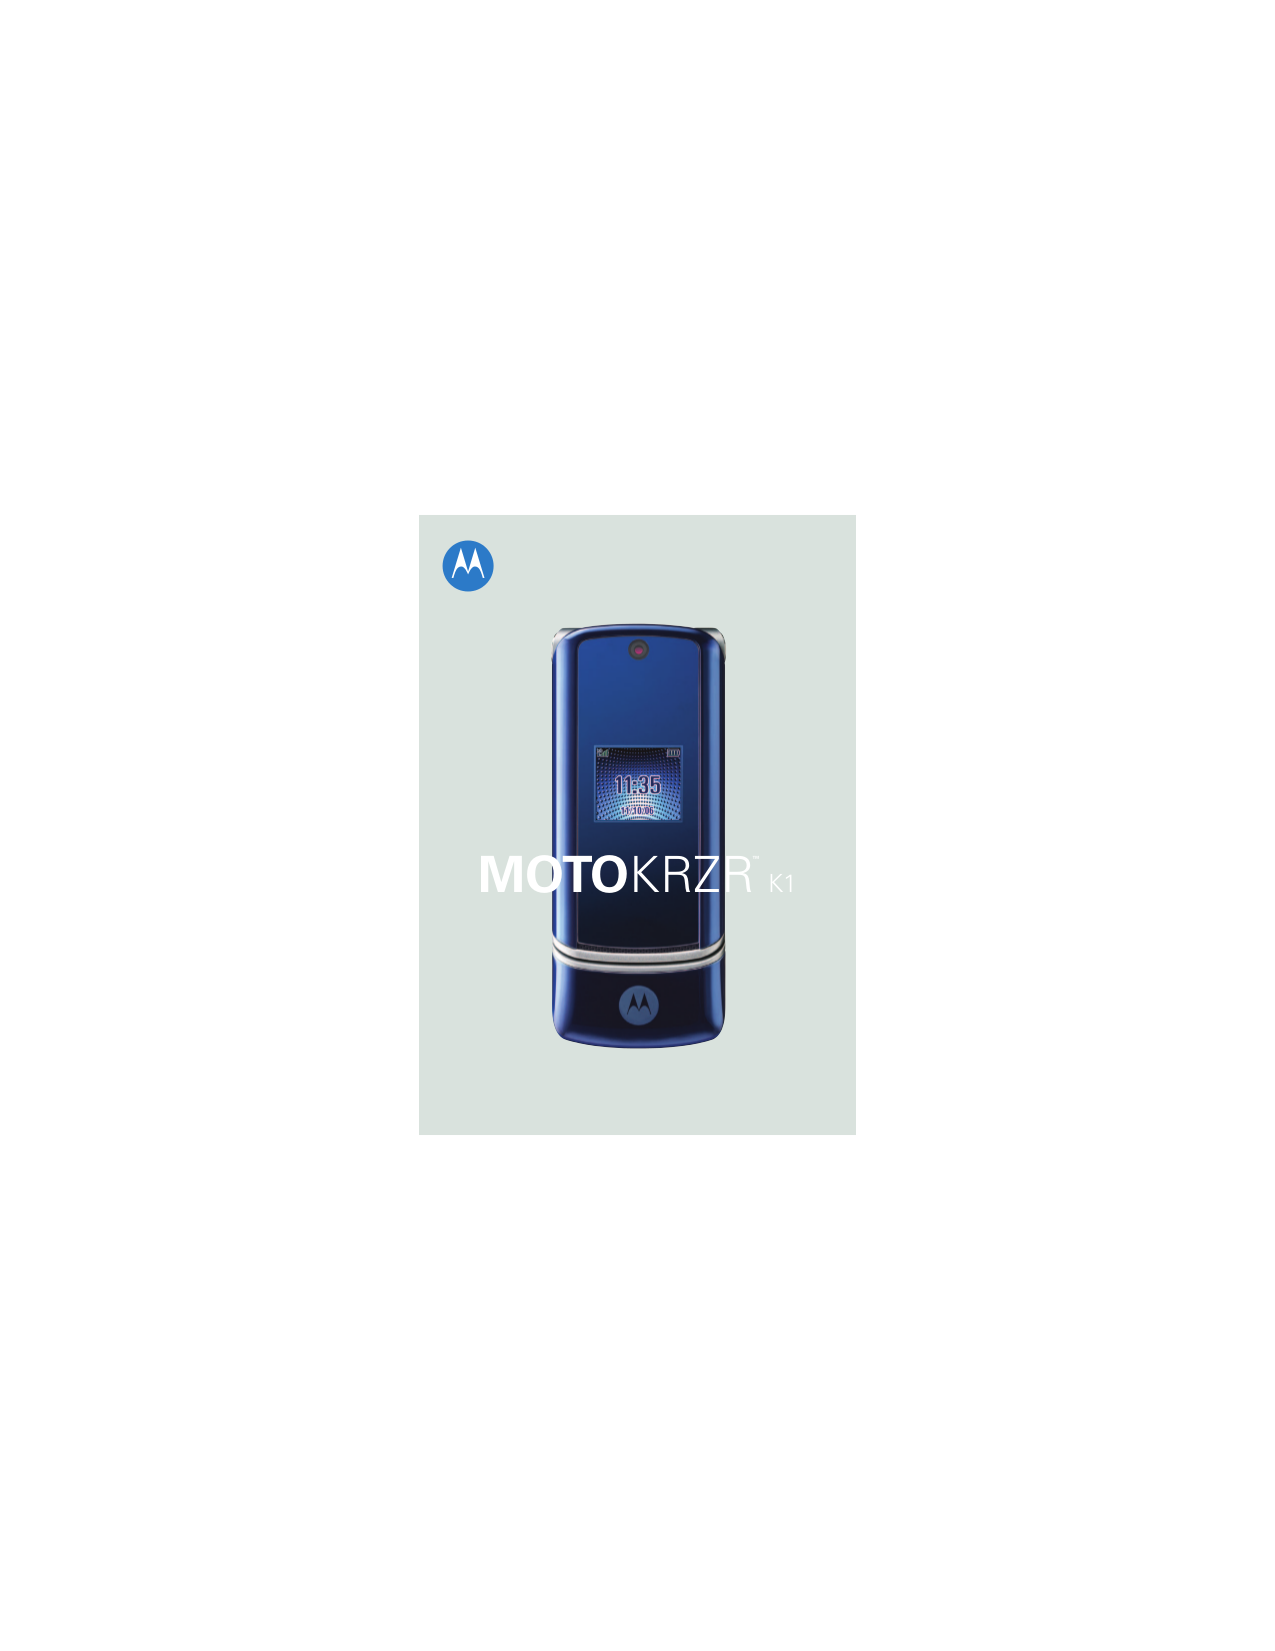 Motorola krzr k1 инструкция